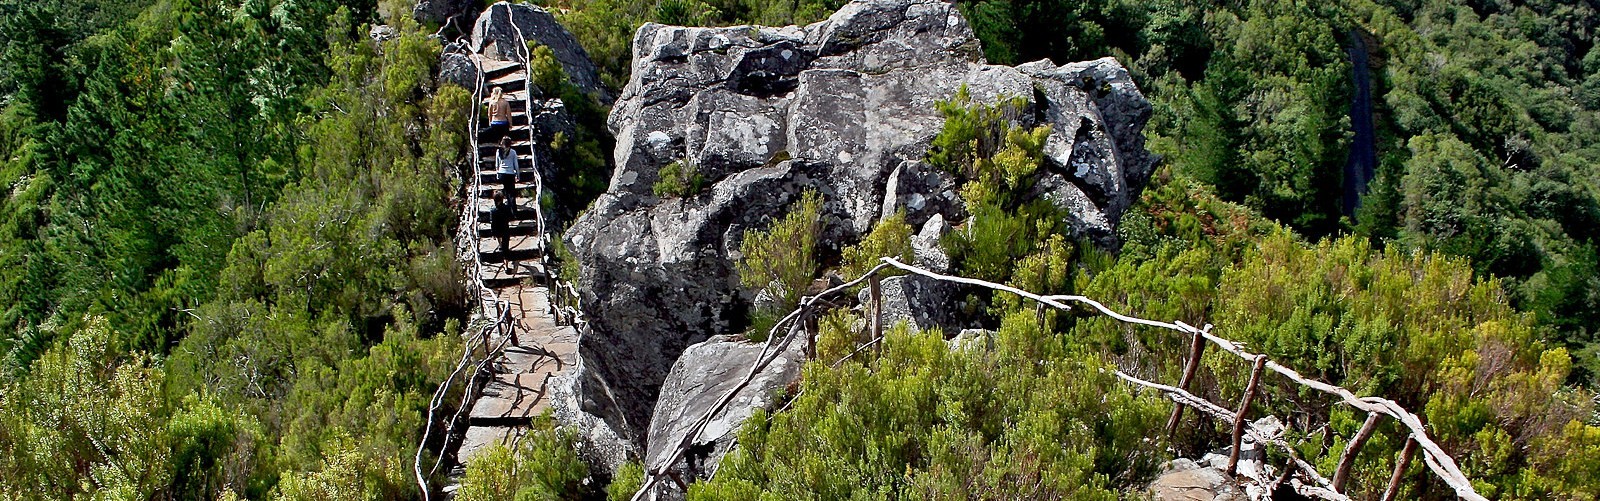 Pico das pedras viewpoint in santana, madeira